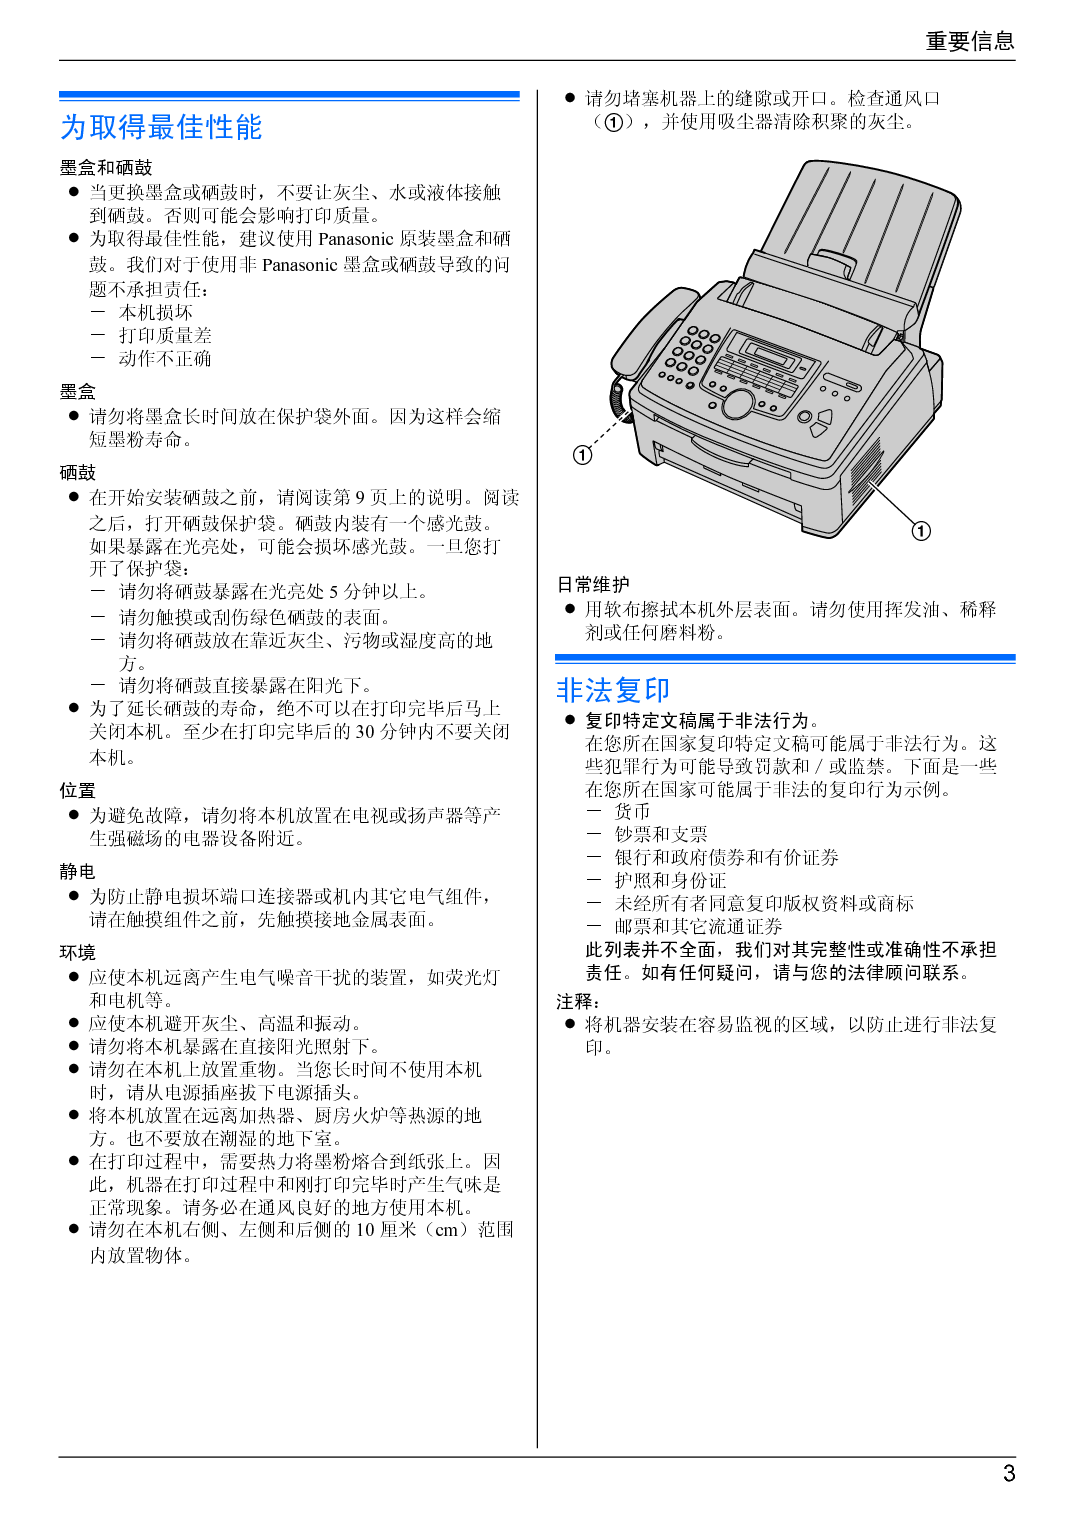 松下 Panasonic KX-FLM668CN 使用说明书 第2页